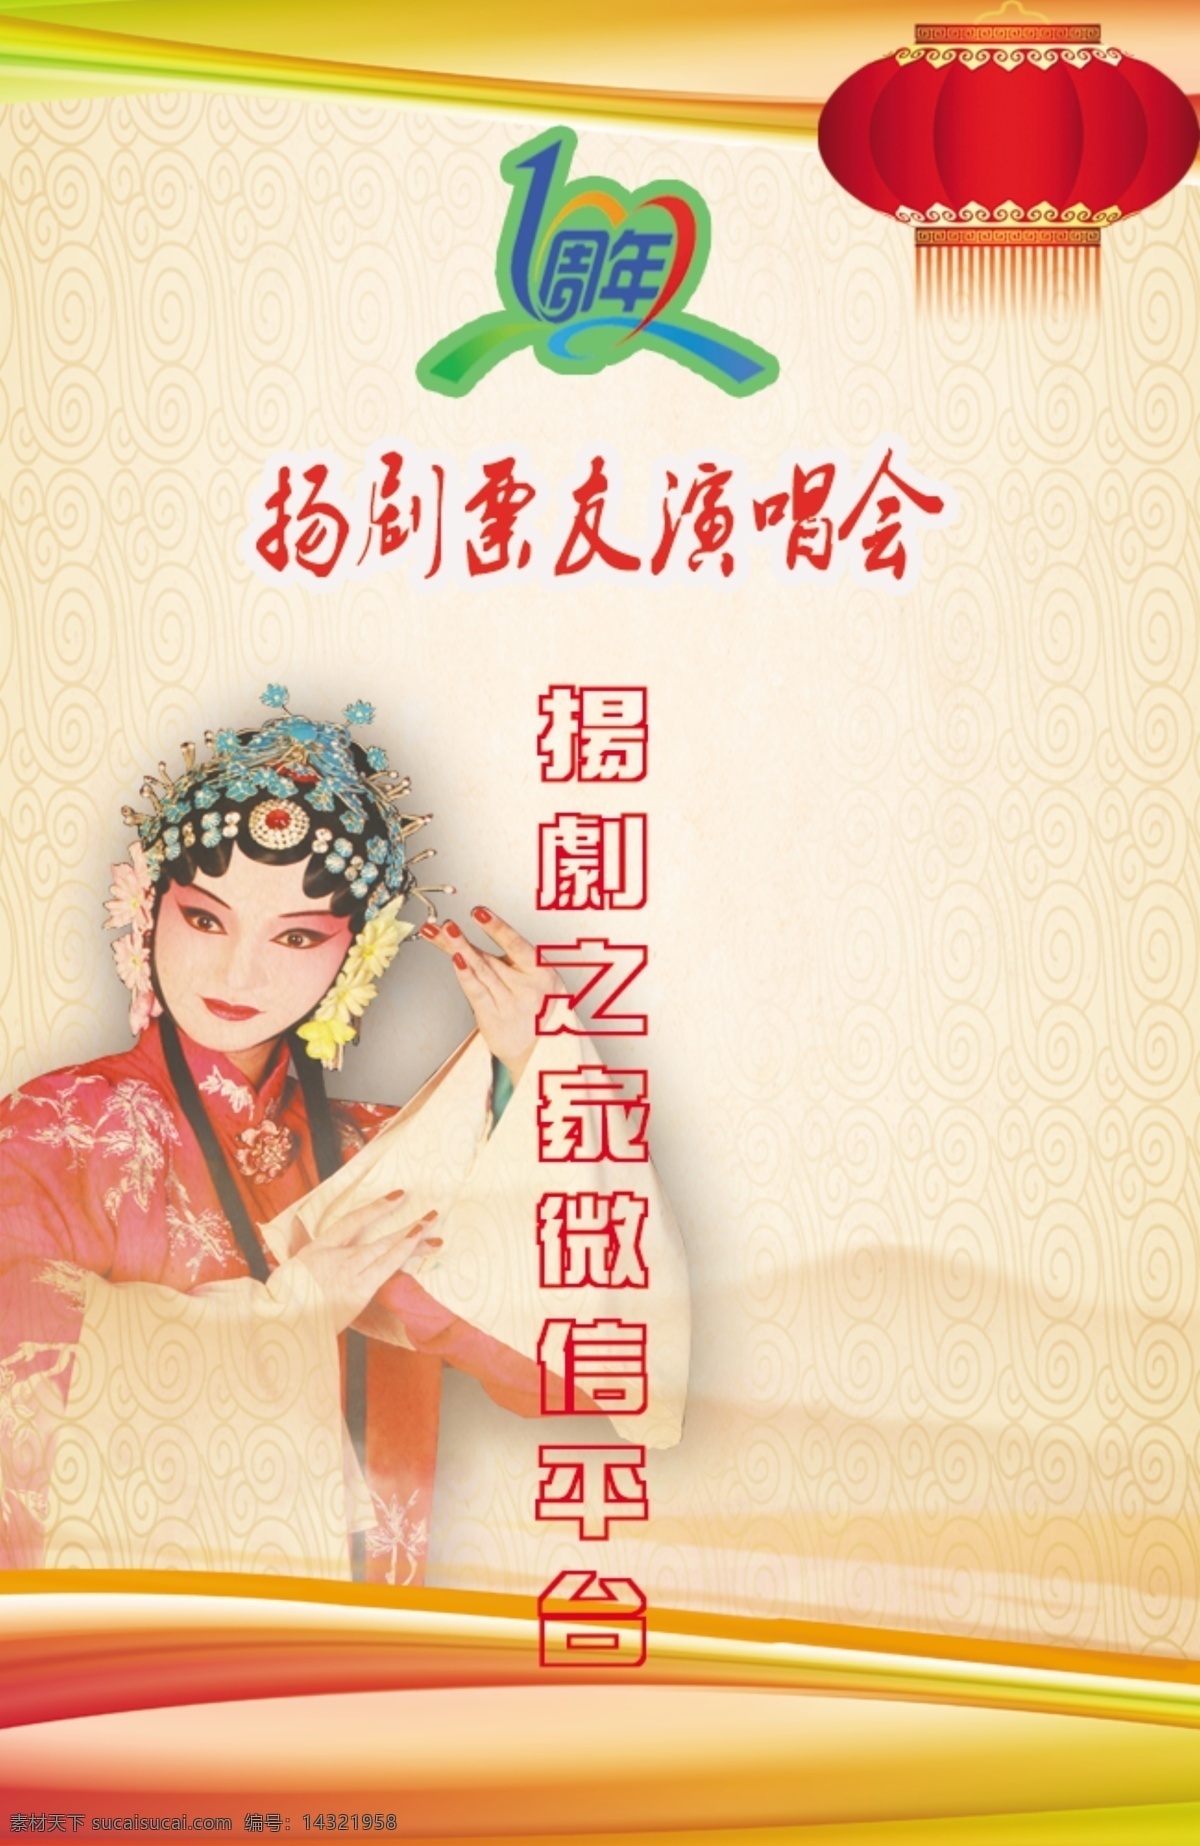 扬州 扬剧 胸卡 工作证 戏曲 戏剧 文化艺术 传统文化